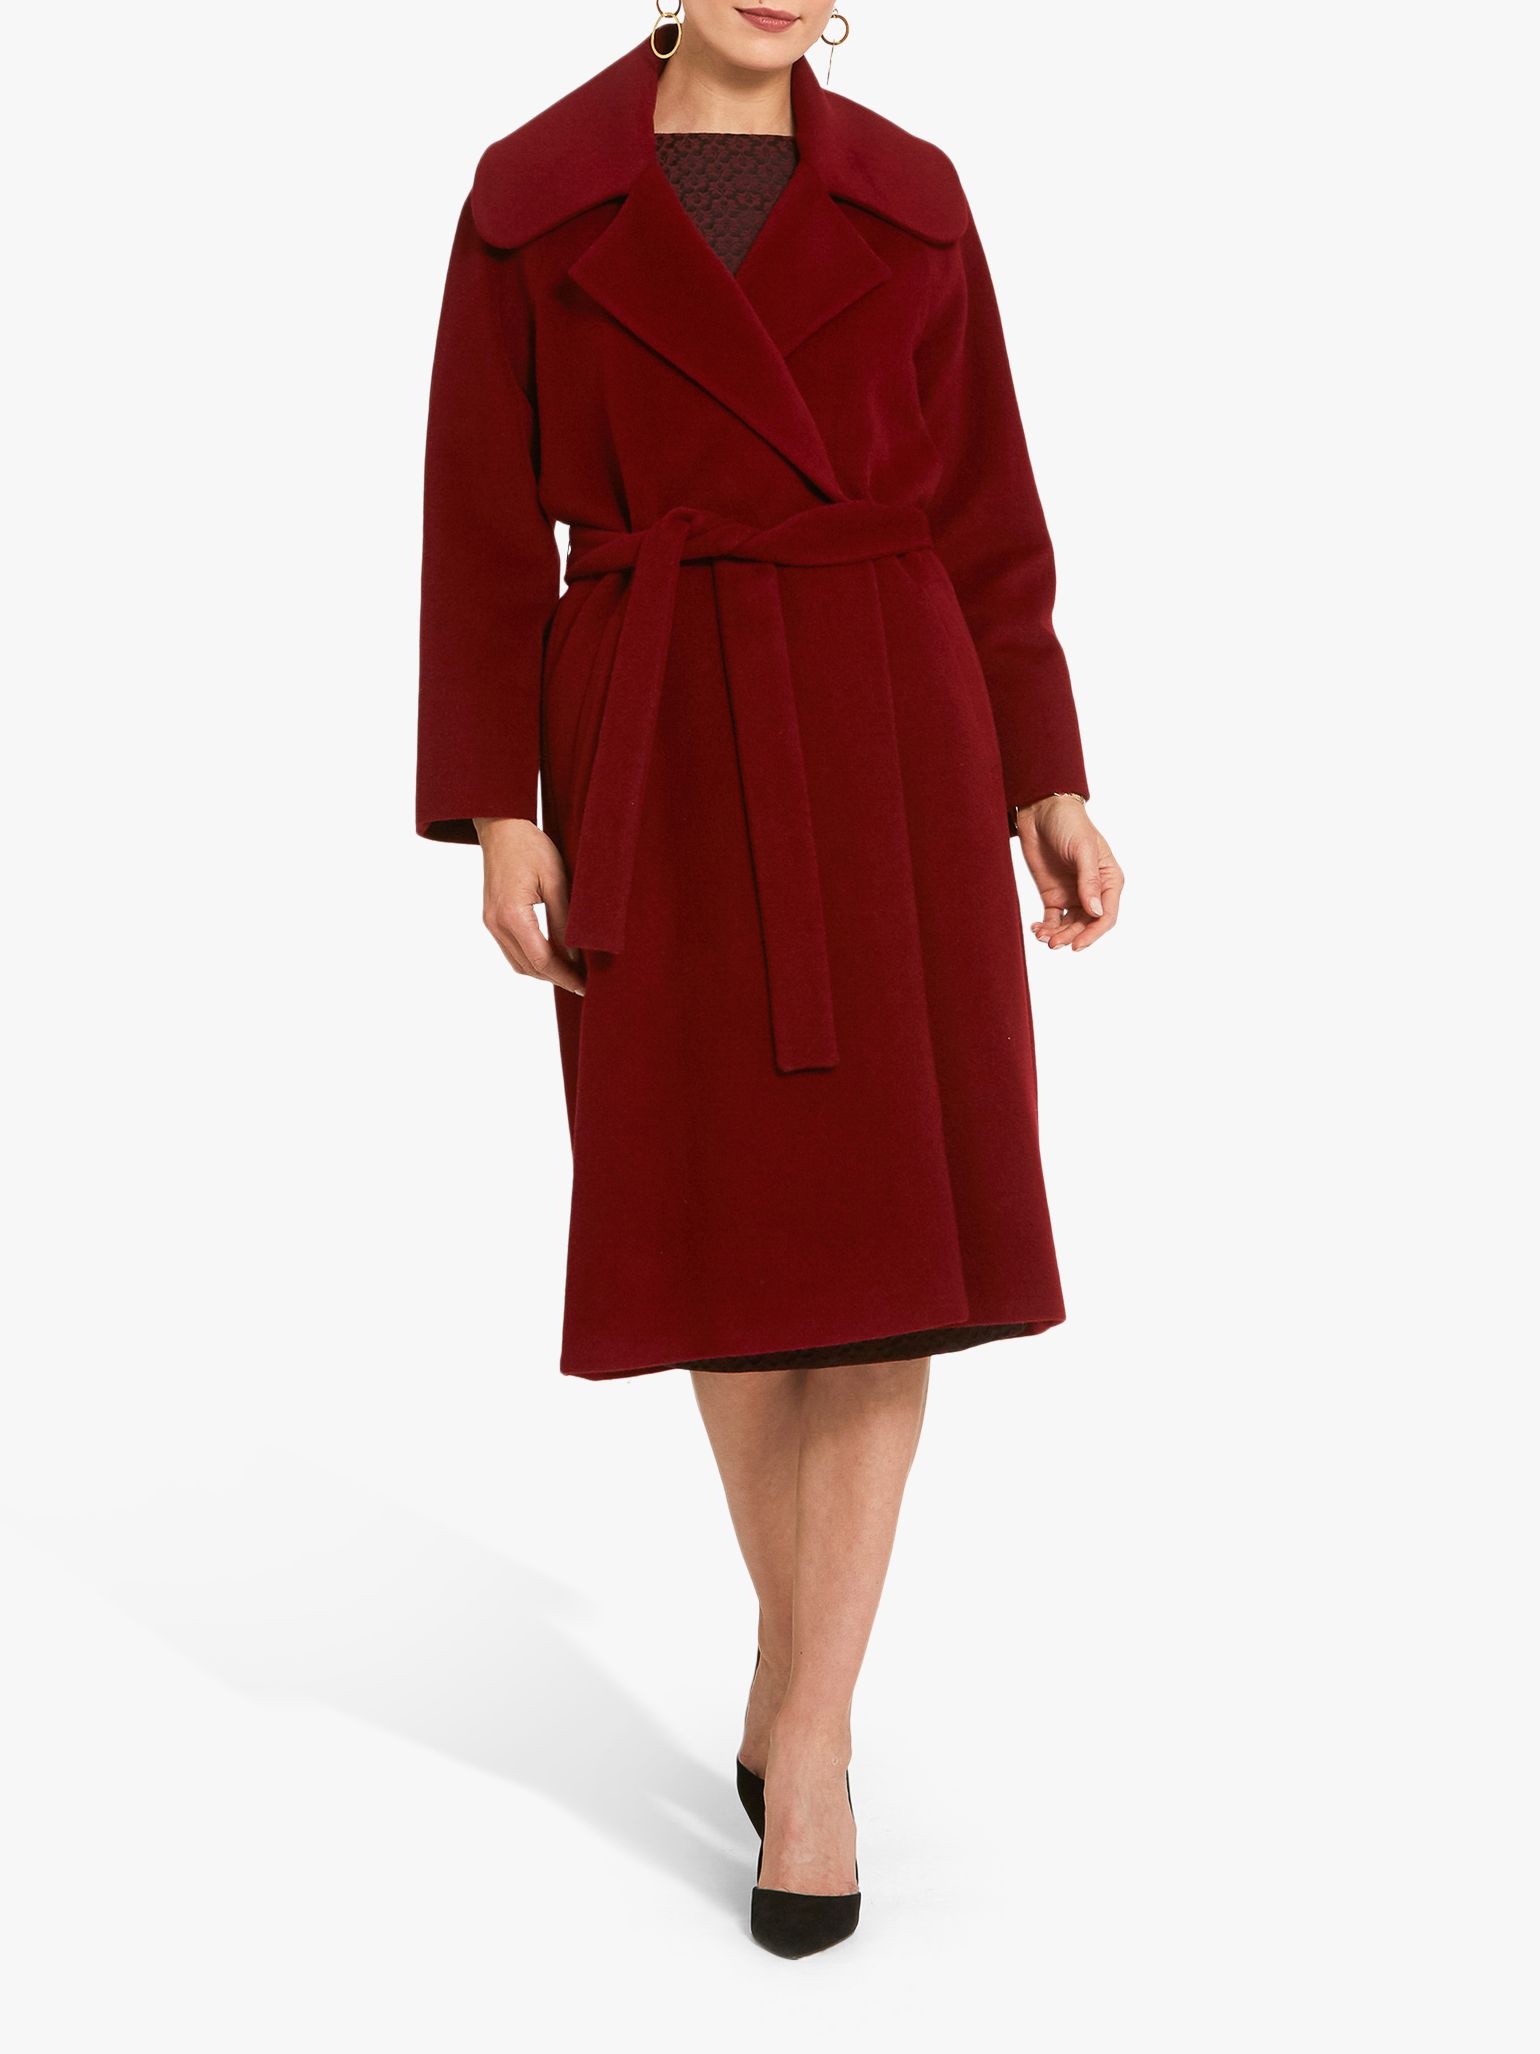 Helen McAlinden Jodie Coat, Ruby Red